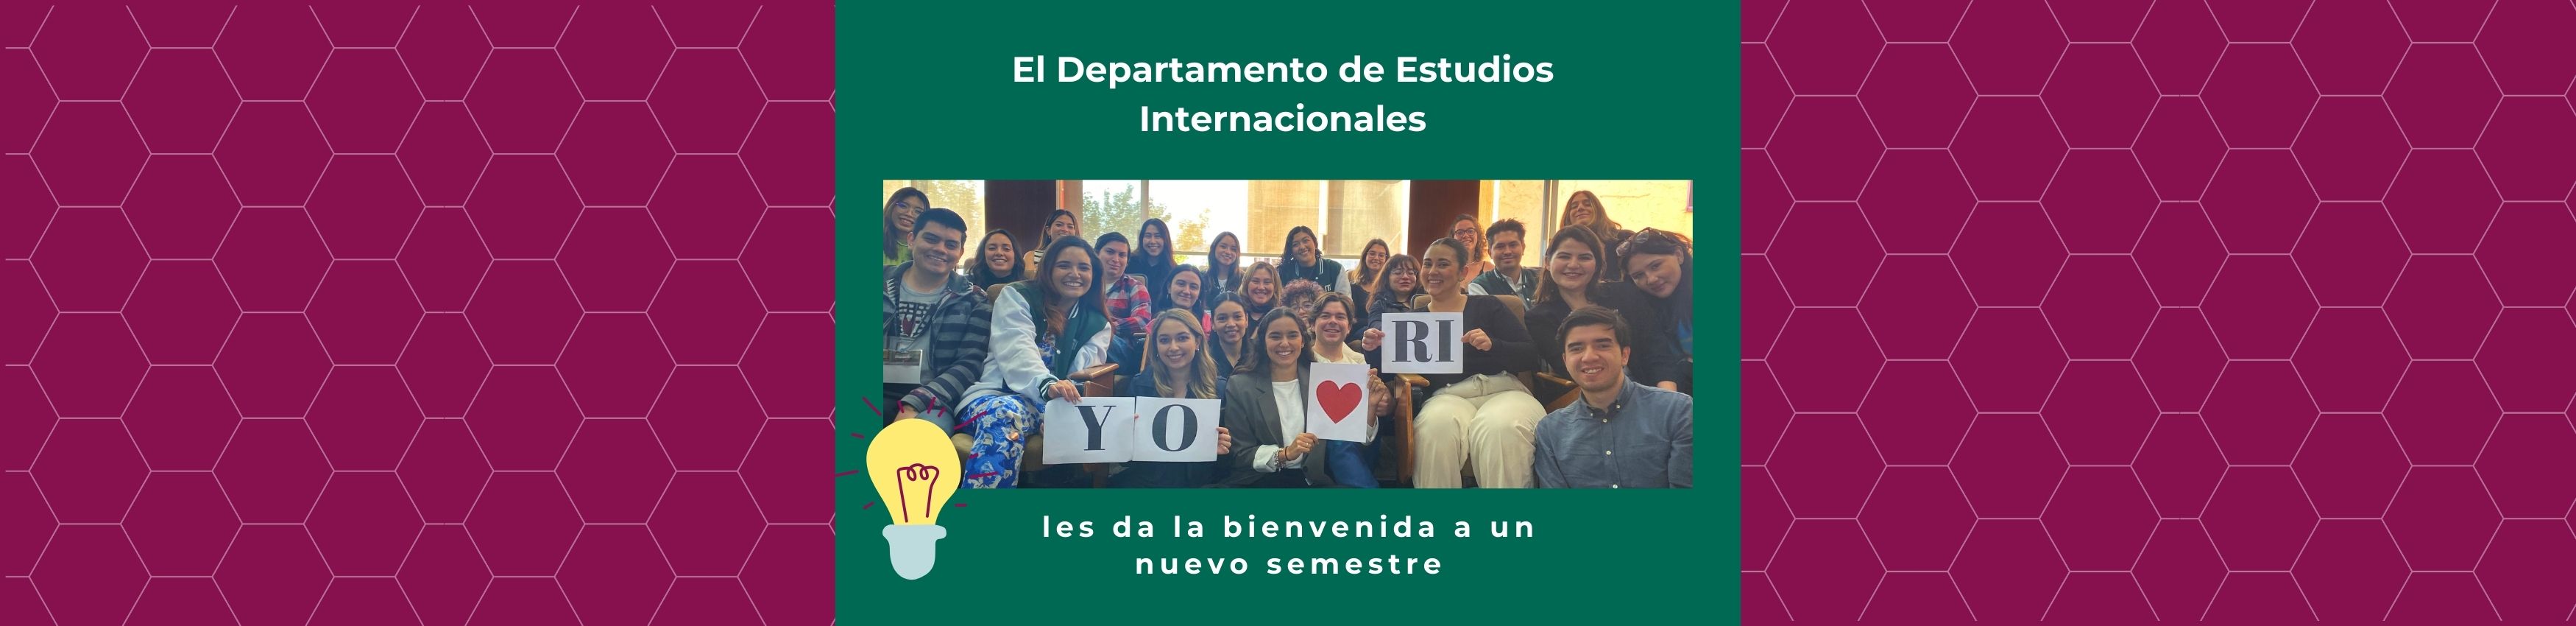 El Departamento de Estudios Internacionales les da la bienvenida a un nuevo semestre